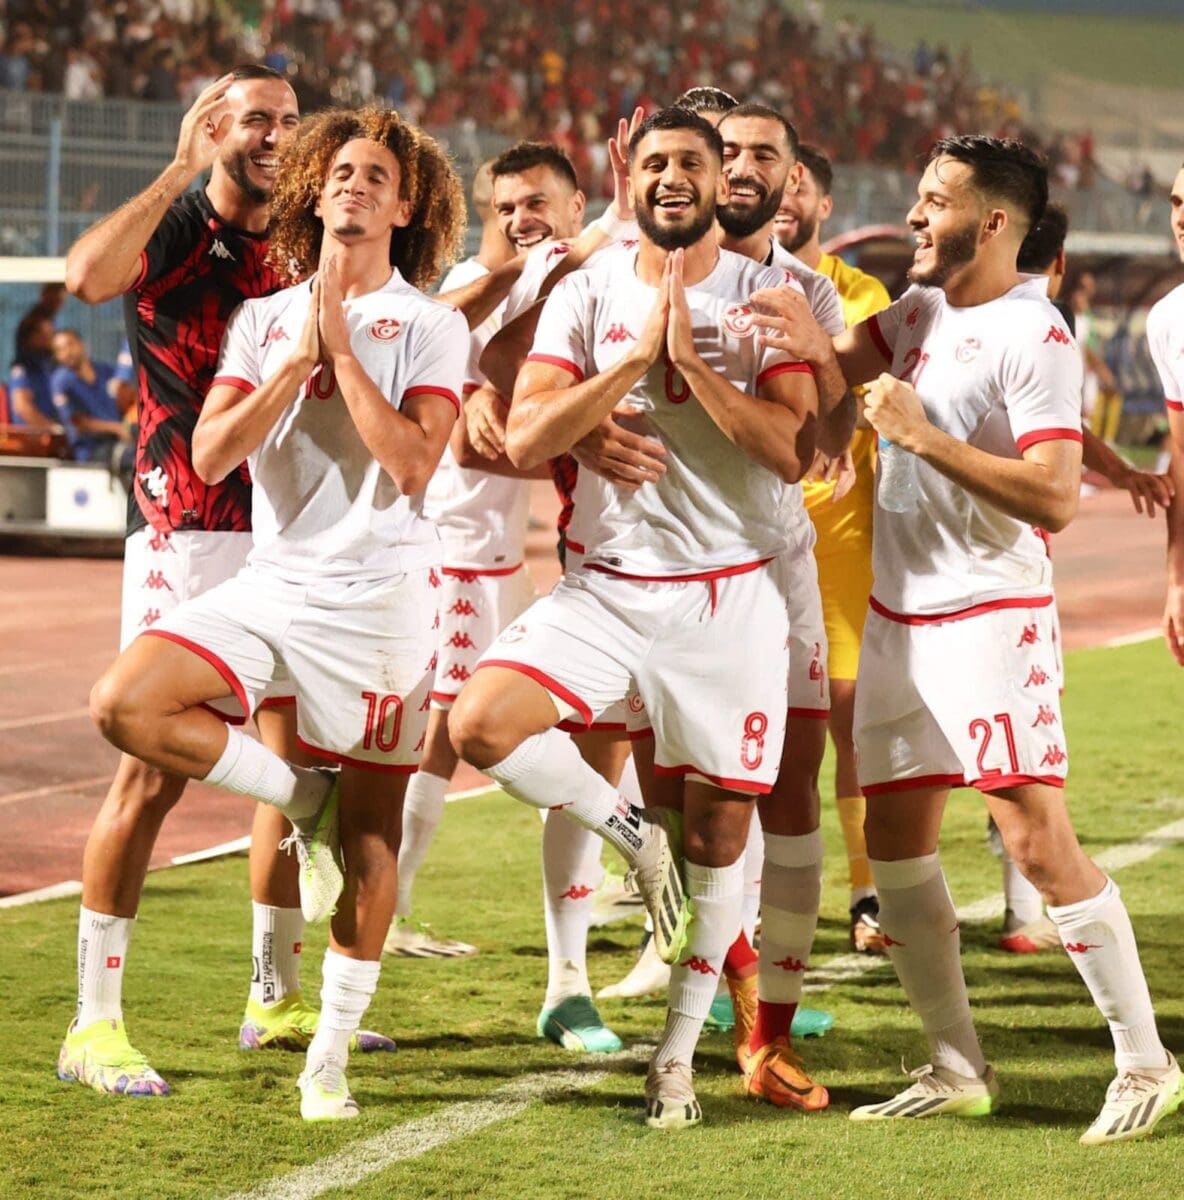 لاعبي منتخب تونس يحتفلون على طريقة "صلاح" الشهيرة عقب تسجيل الهدف الثالث أمام الفراعنة - مصدر الصورة: melkaaoud@ (X)